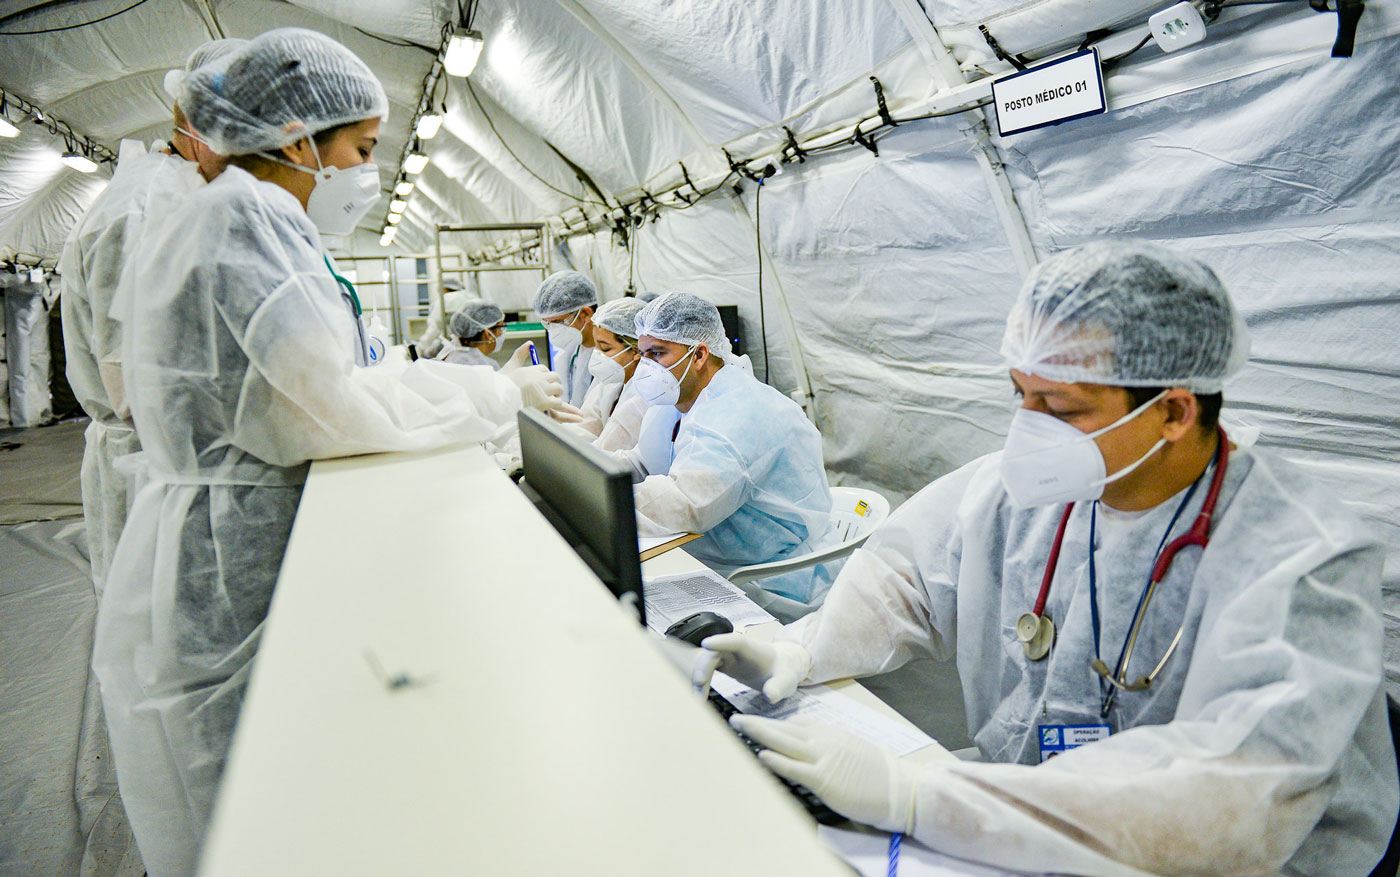 A imagem apresenta médicos do Hospital de Campanha de Roraima sentados em uma mesa, todos vestem equipamentos de proteção individual como jaleco, máscara, touca e luva brancas